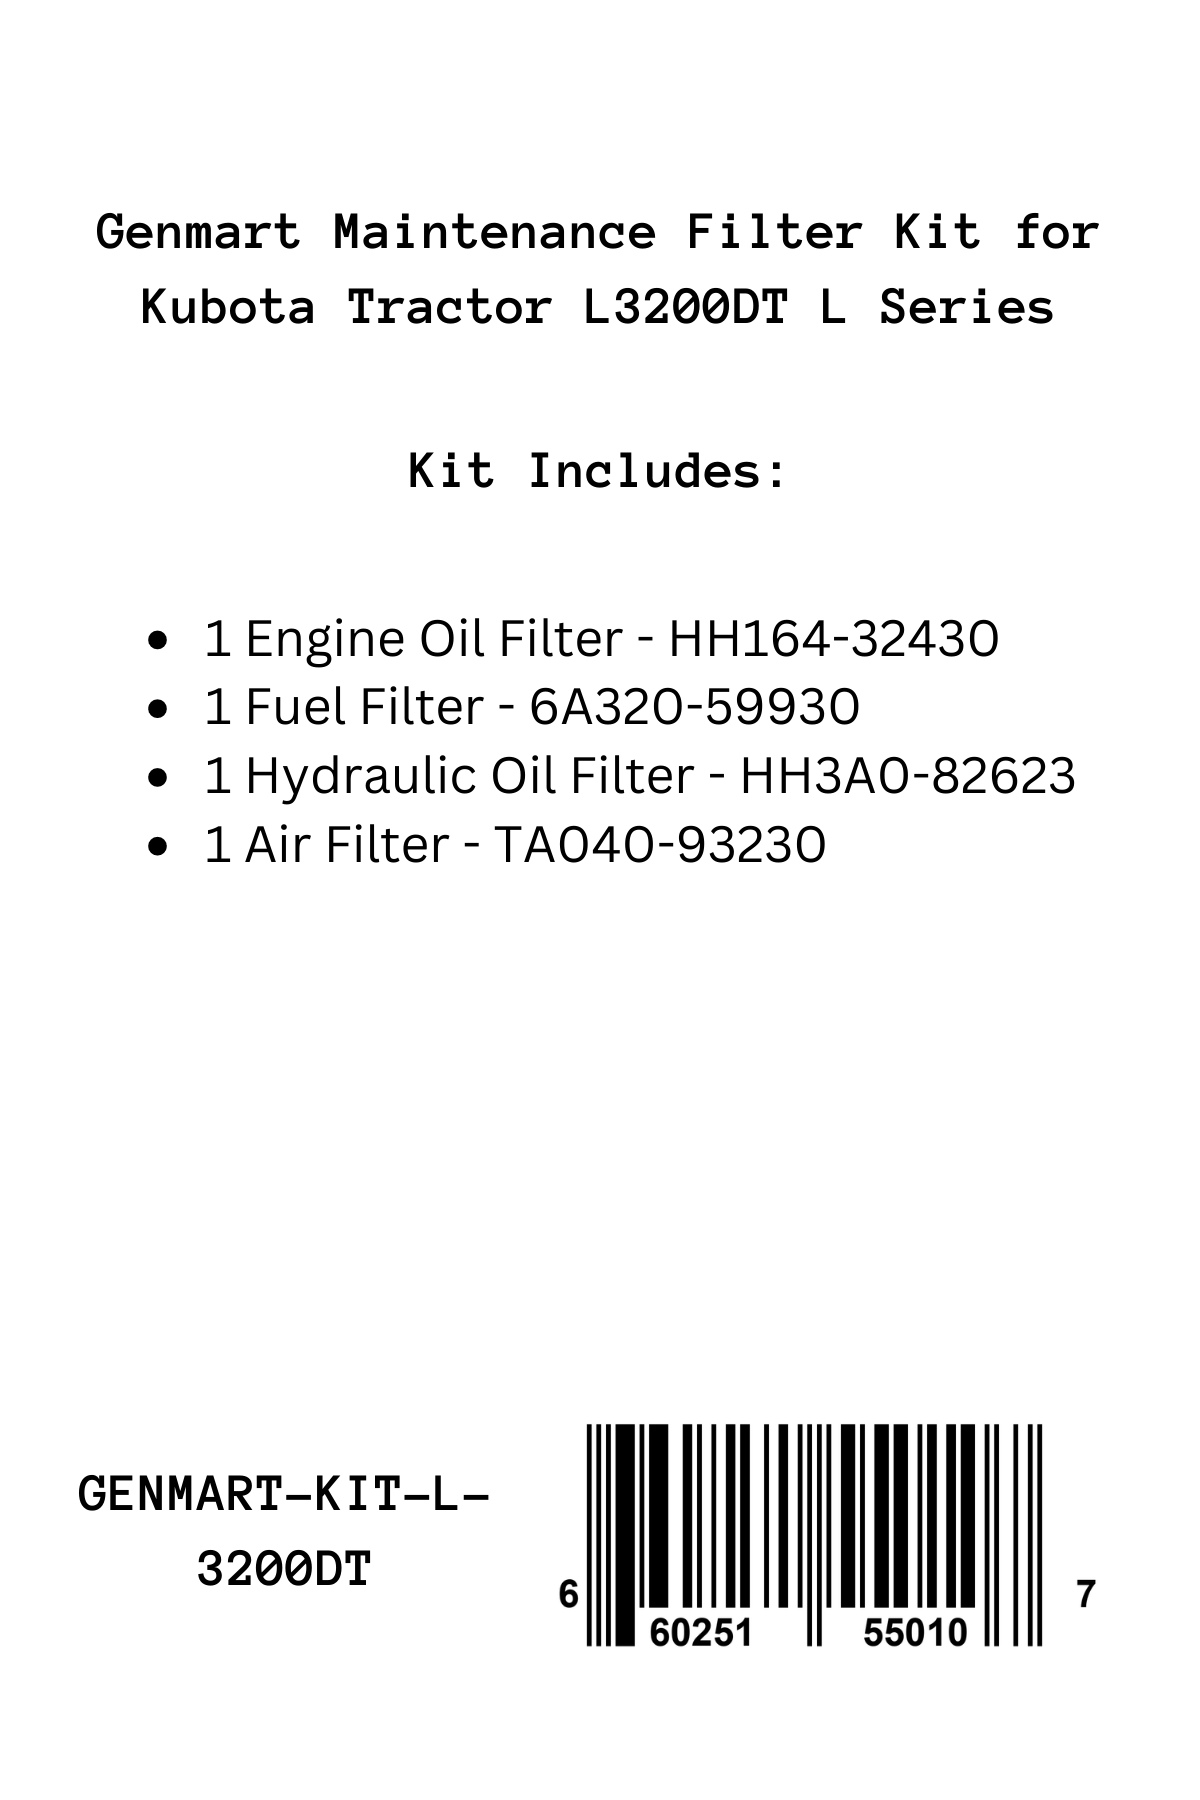 Genmart Maintenance Kit for Kubota Tractor L3200DT L Series